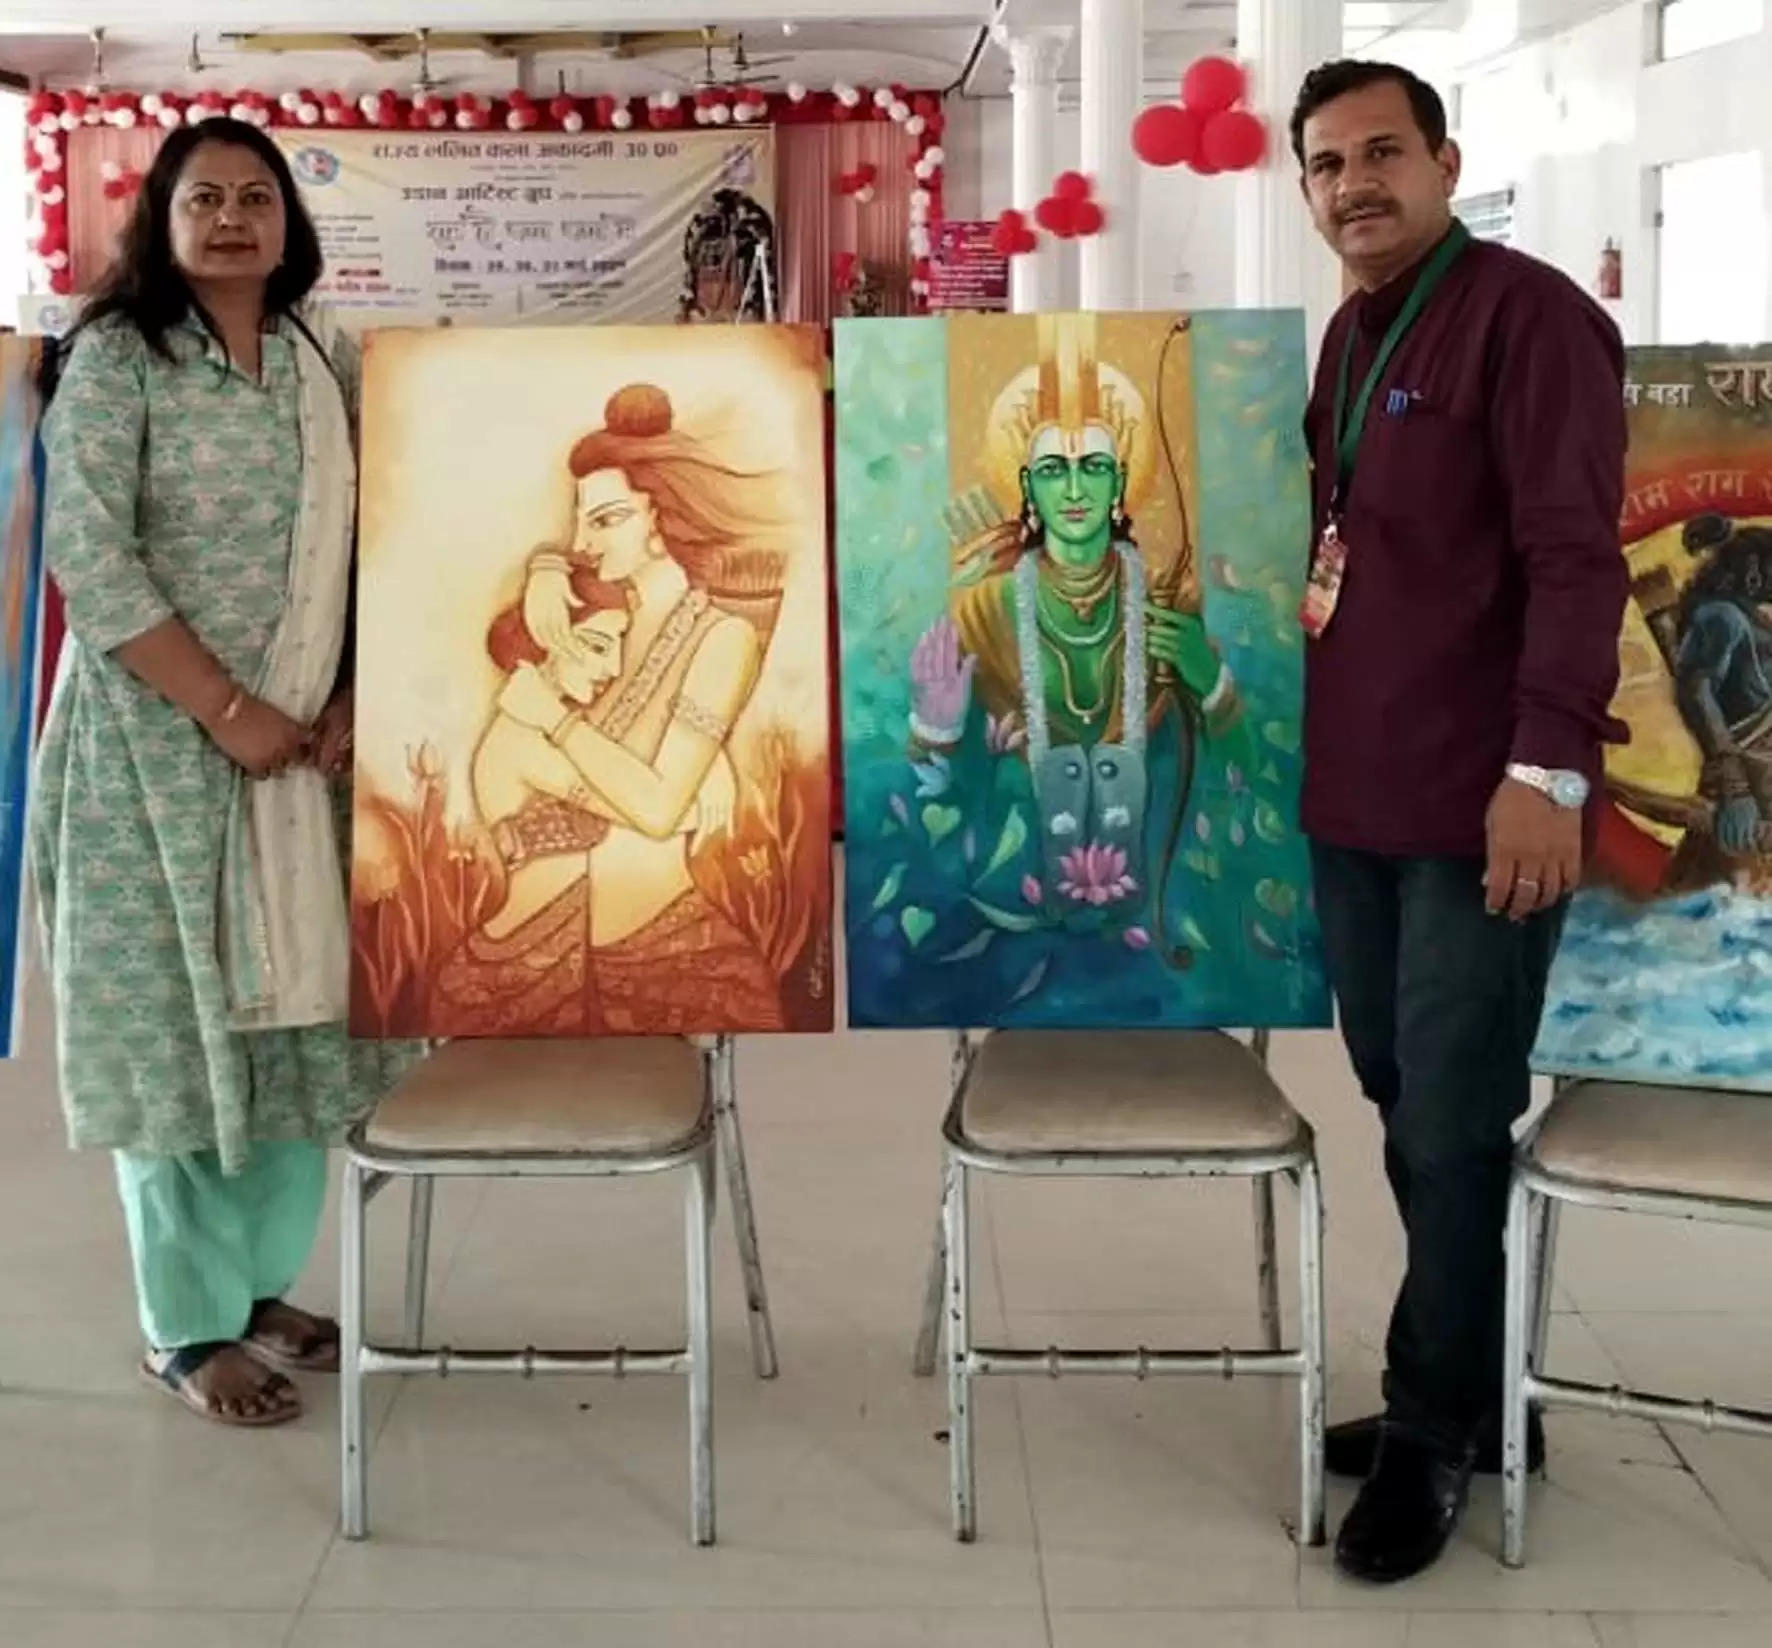 हिसार : डाॅ. राजेश जांगड़ा को श्रेष्ठ कलाकार के सम्मान से नवाजा